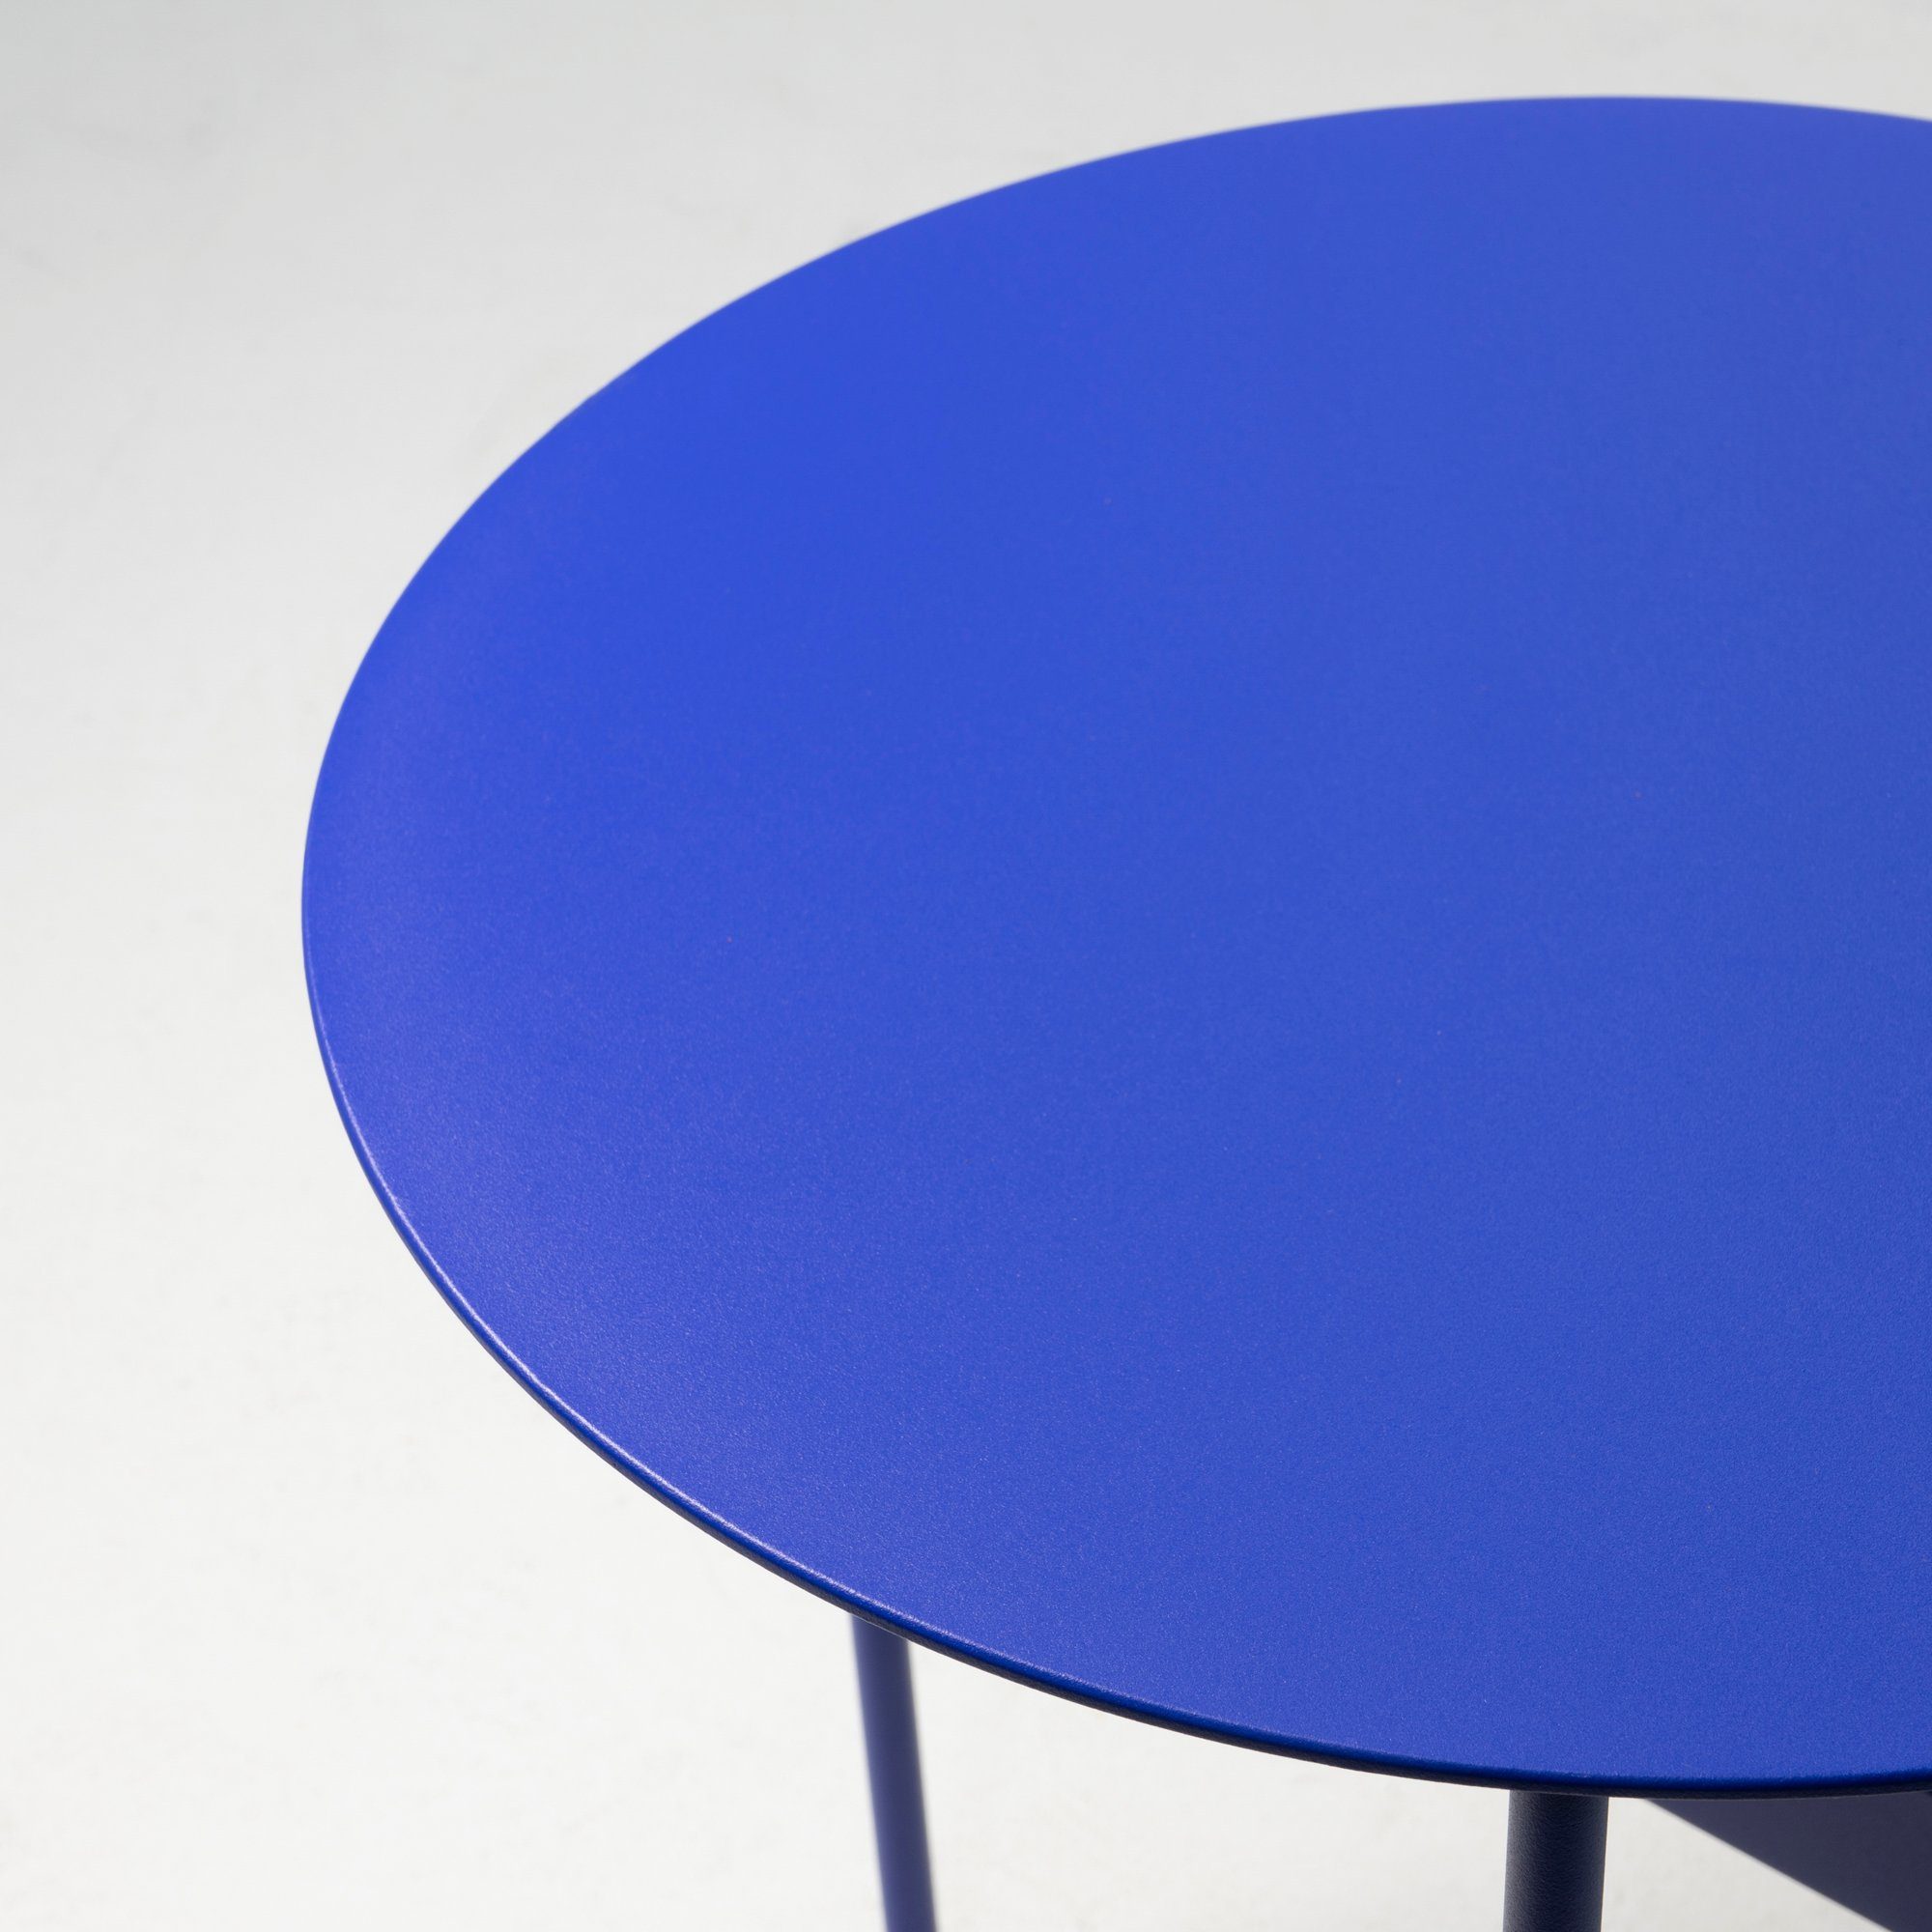 Torna 40x50x40cm HIGH Beistelltisch Ultramarine - Beistelltisch Furniture MARA Torna Design